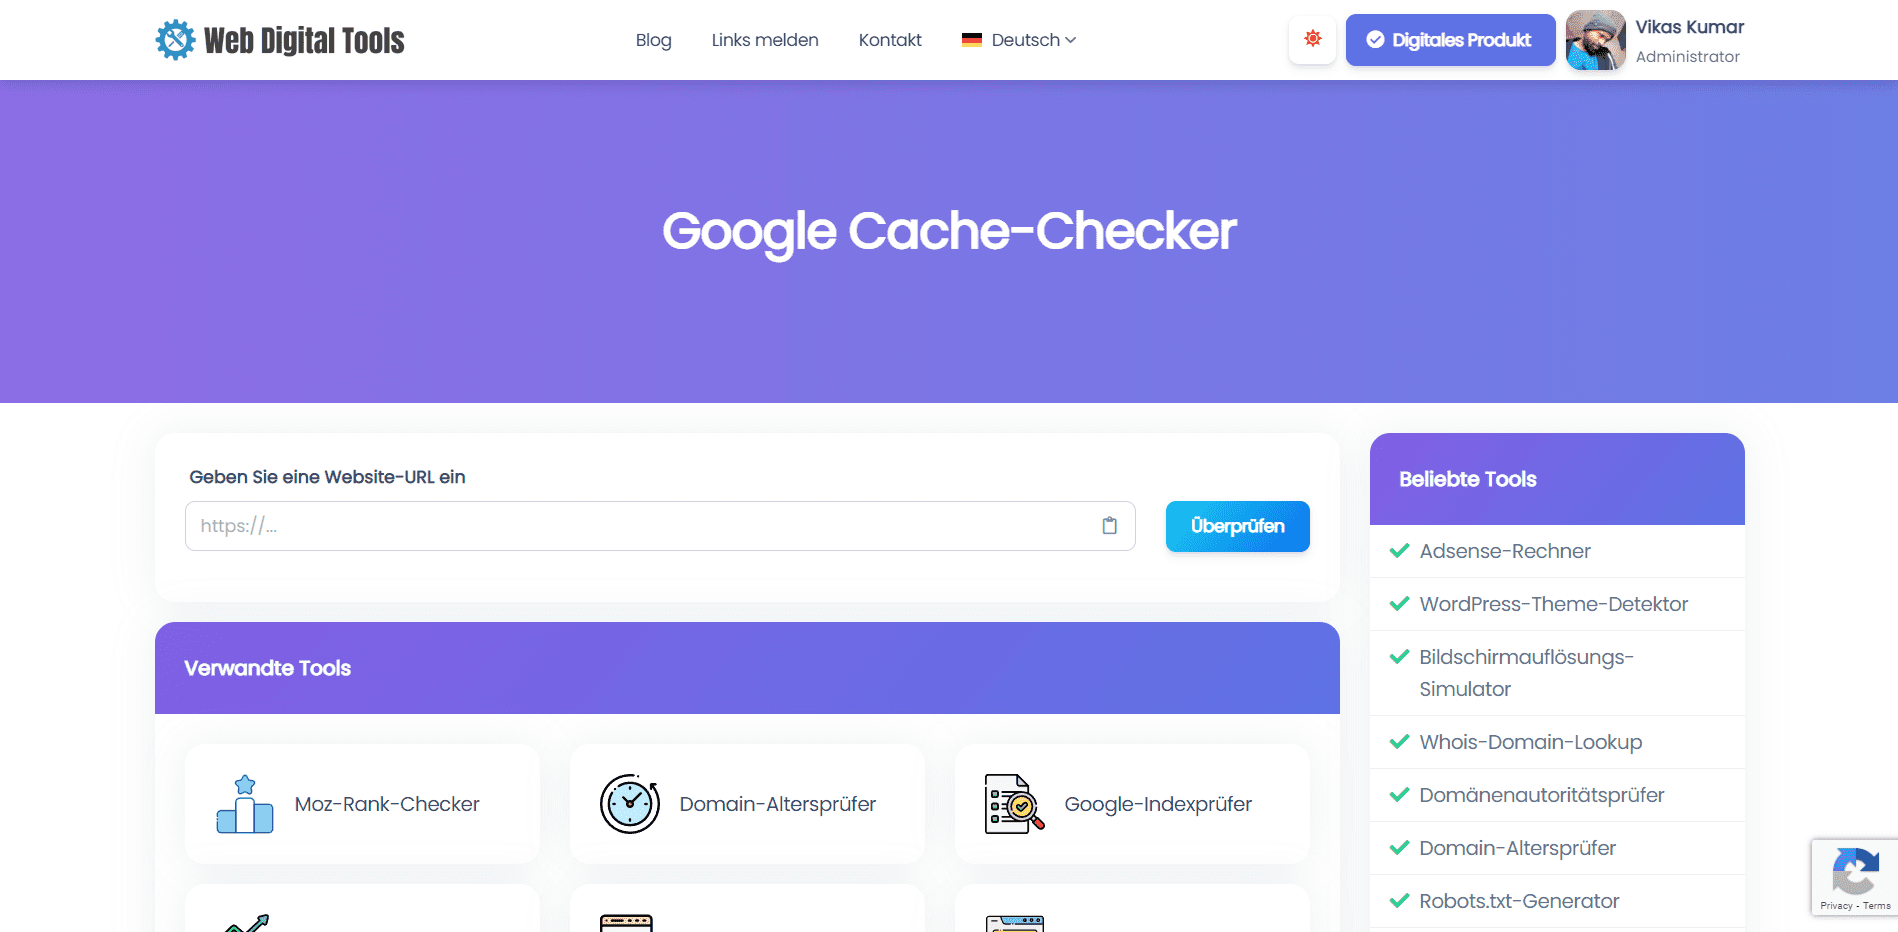 Google Cache-Checker